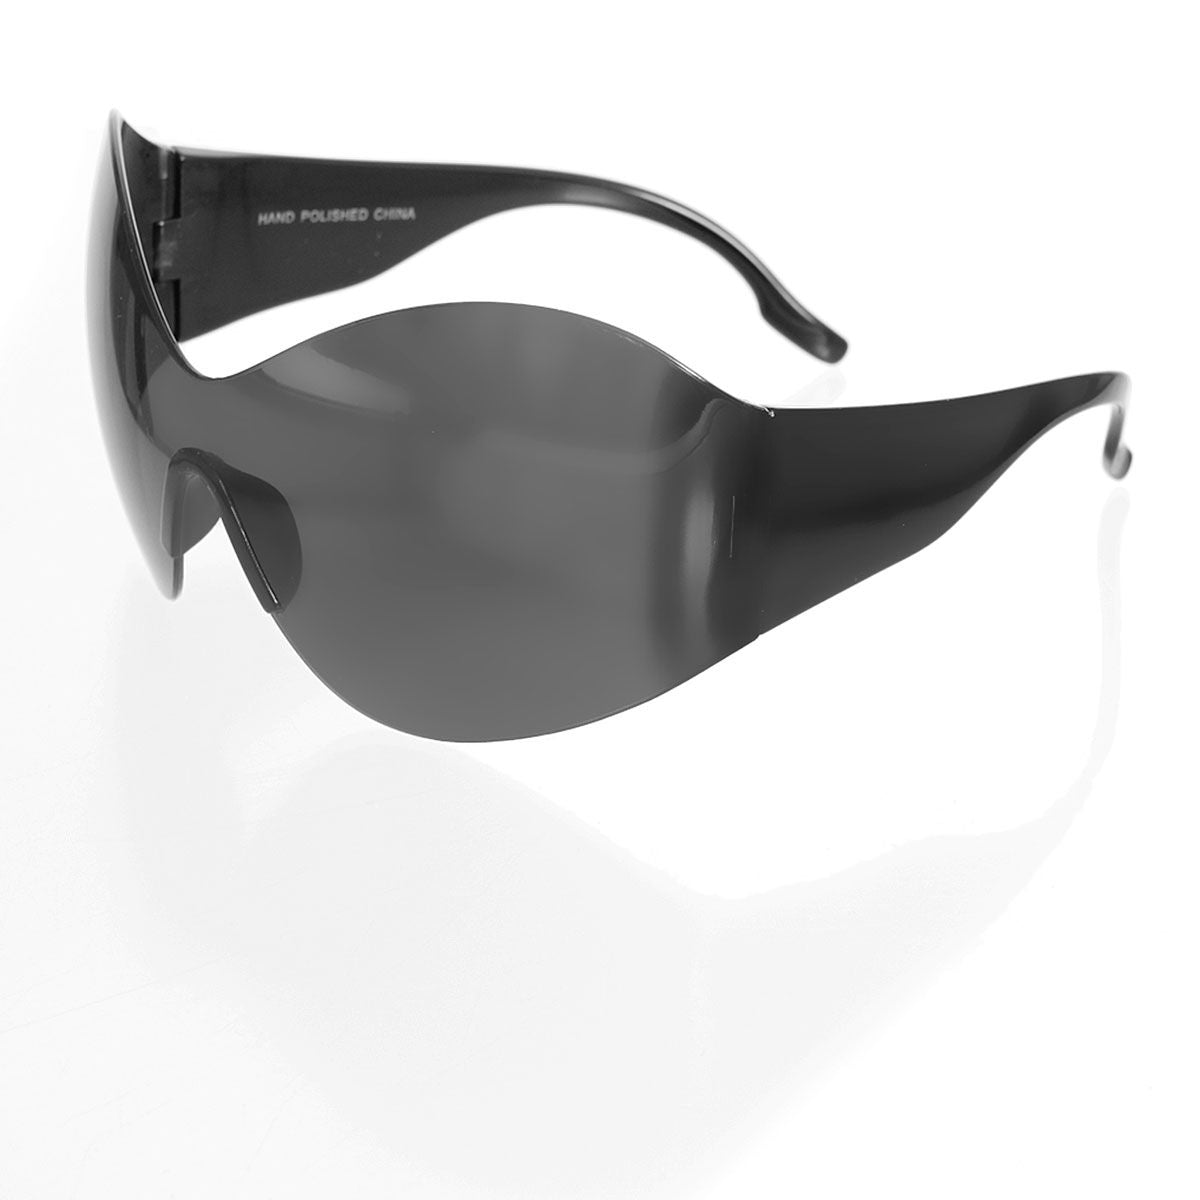 Sunglasses Butterfly Mask Black Eyewear for Women - Bae Apparel